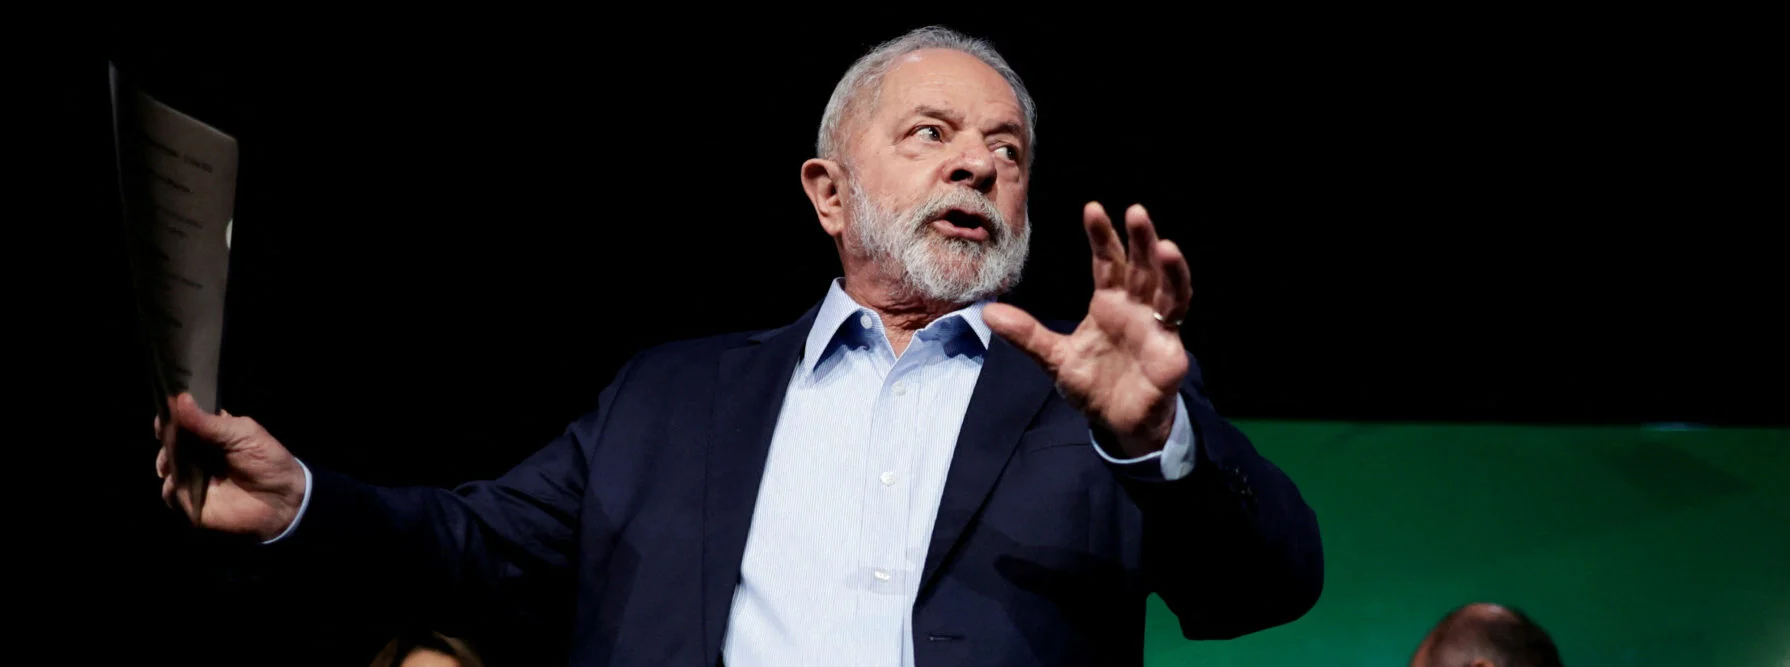 Βραζιλία: Ο Λούλα ανακαλεί τον πρεσβευτή της χώρας στο Ισραήλ